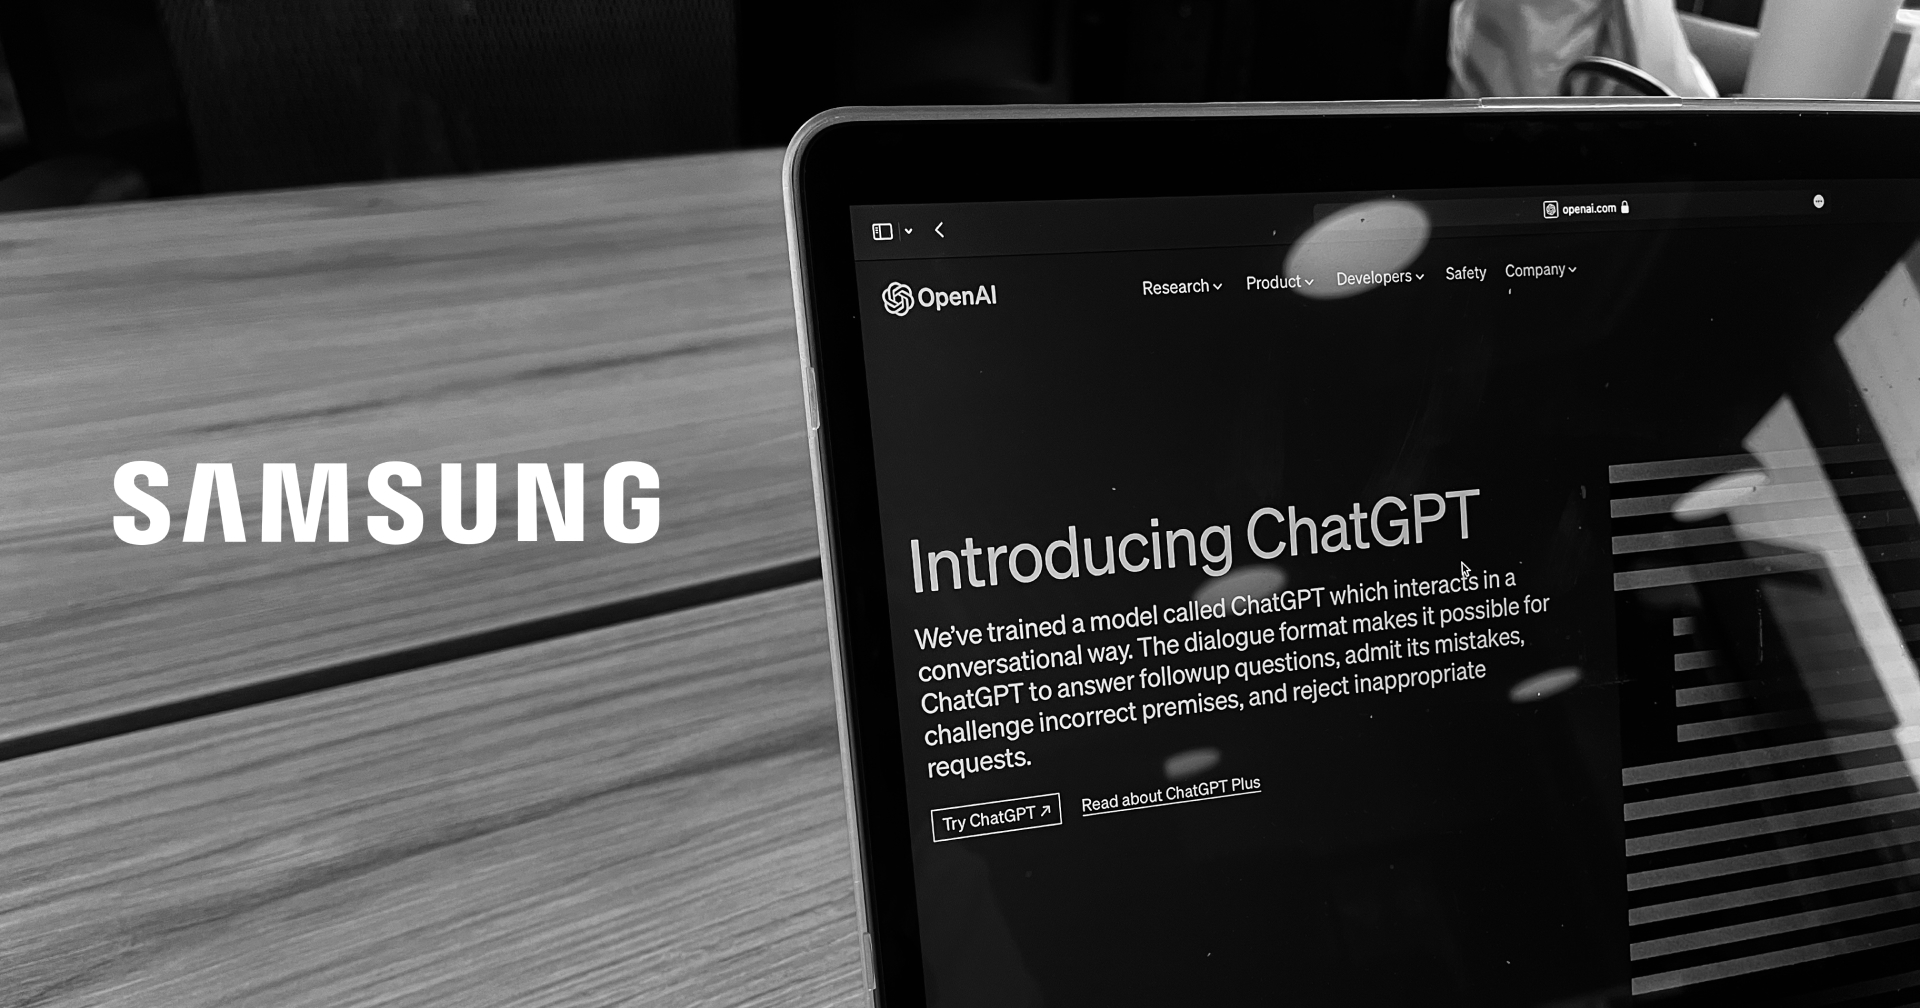 Samsung สั่งแบนและห้ามพนักงานใช้งาน ChatGPT และ AI อื่น ๆ ป้องกันข้อมูลบริษัทรั่วไหล